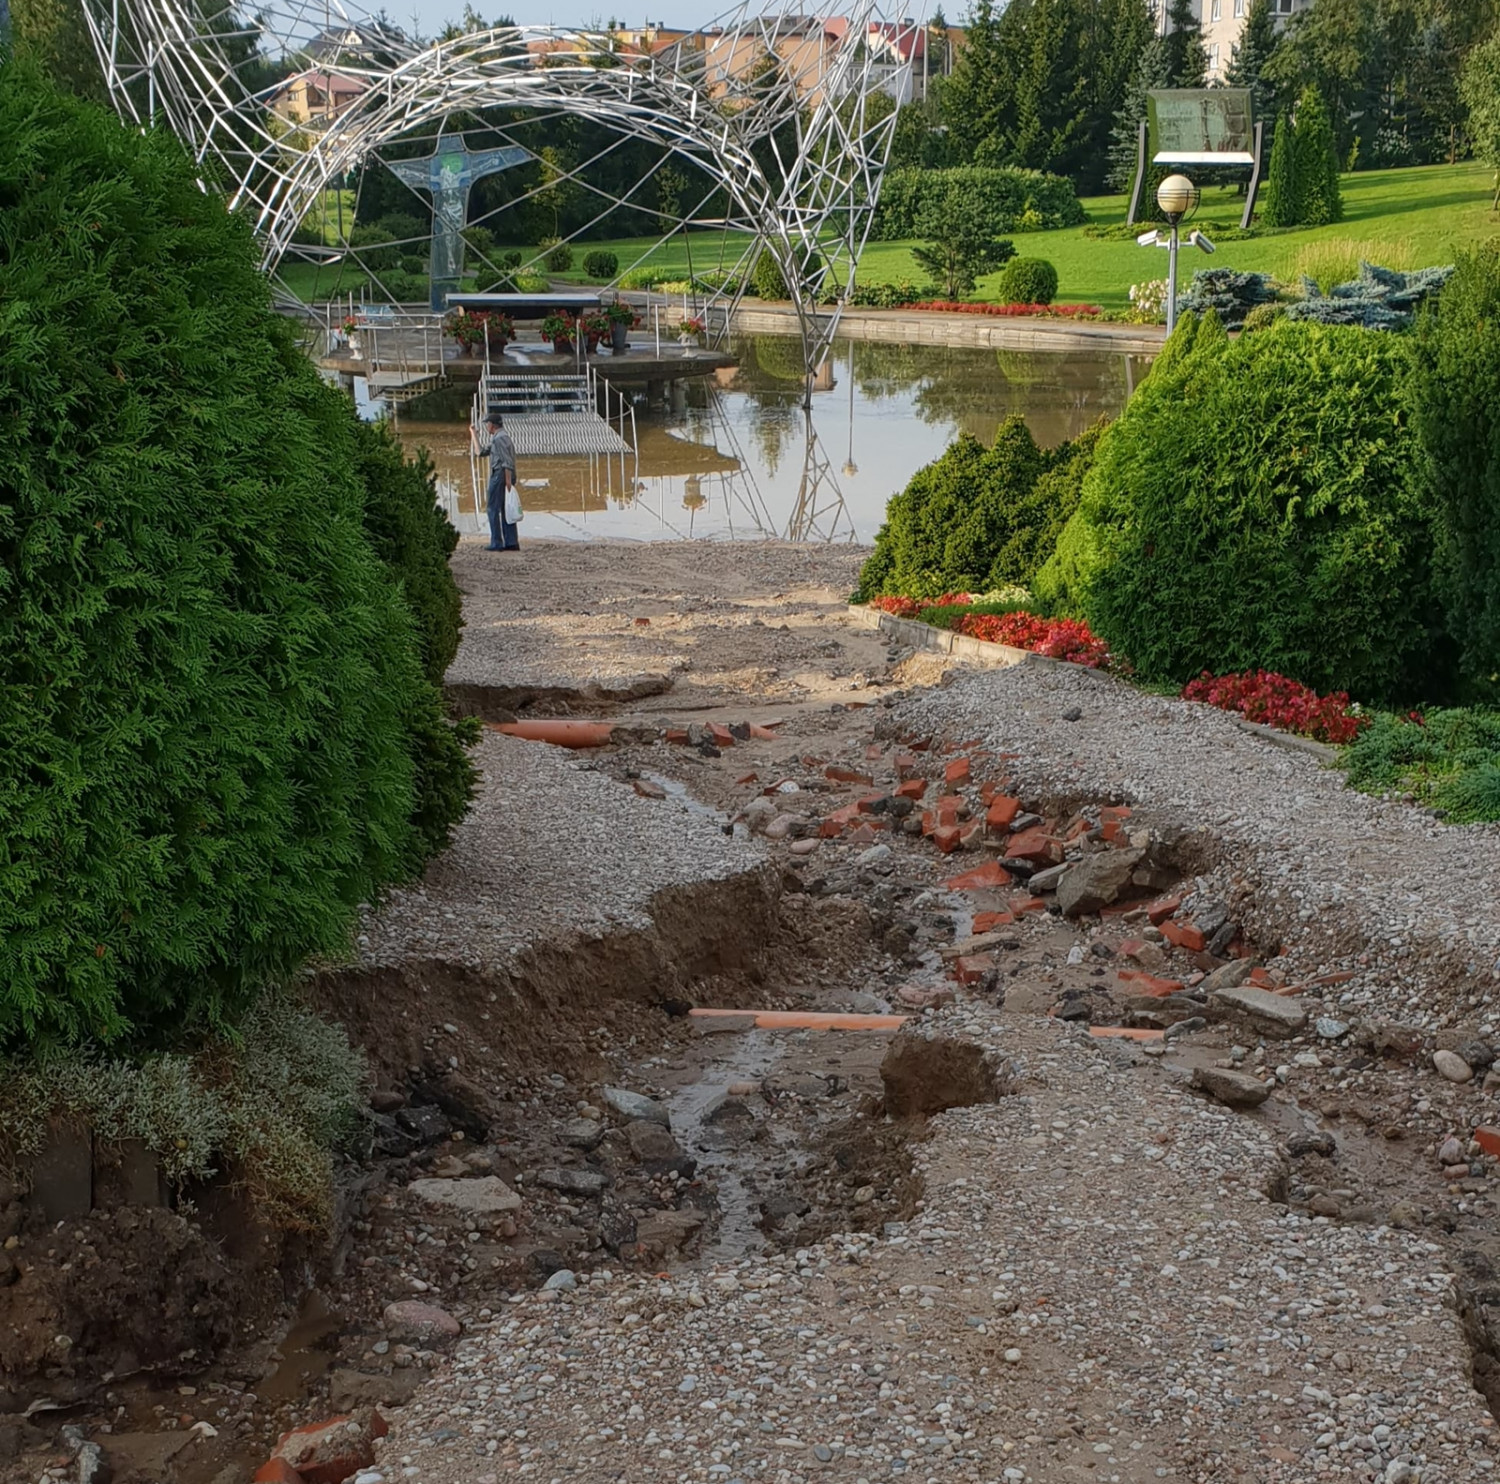 Ulewa wyrządziła szkody także w parku przy Ołtarzu Papieskim w Sierakowicach. fot. nadesłane/Krystian